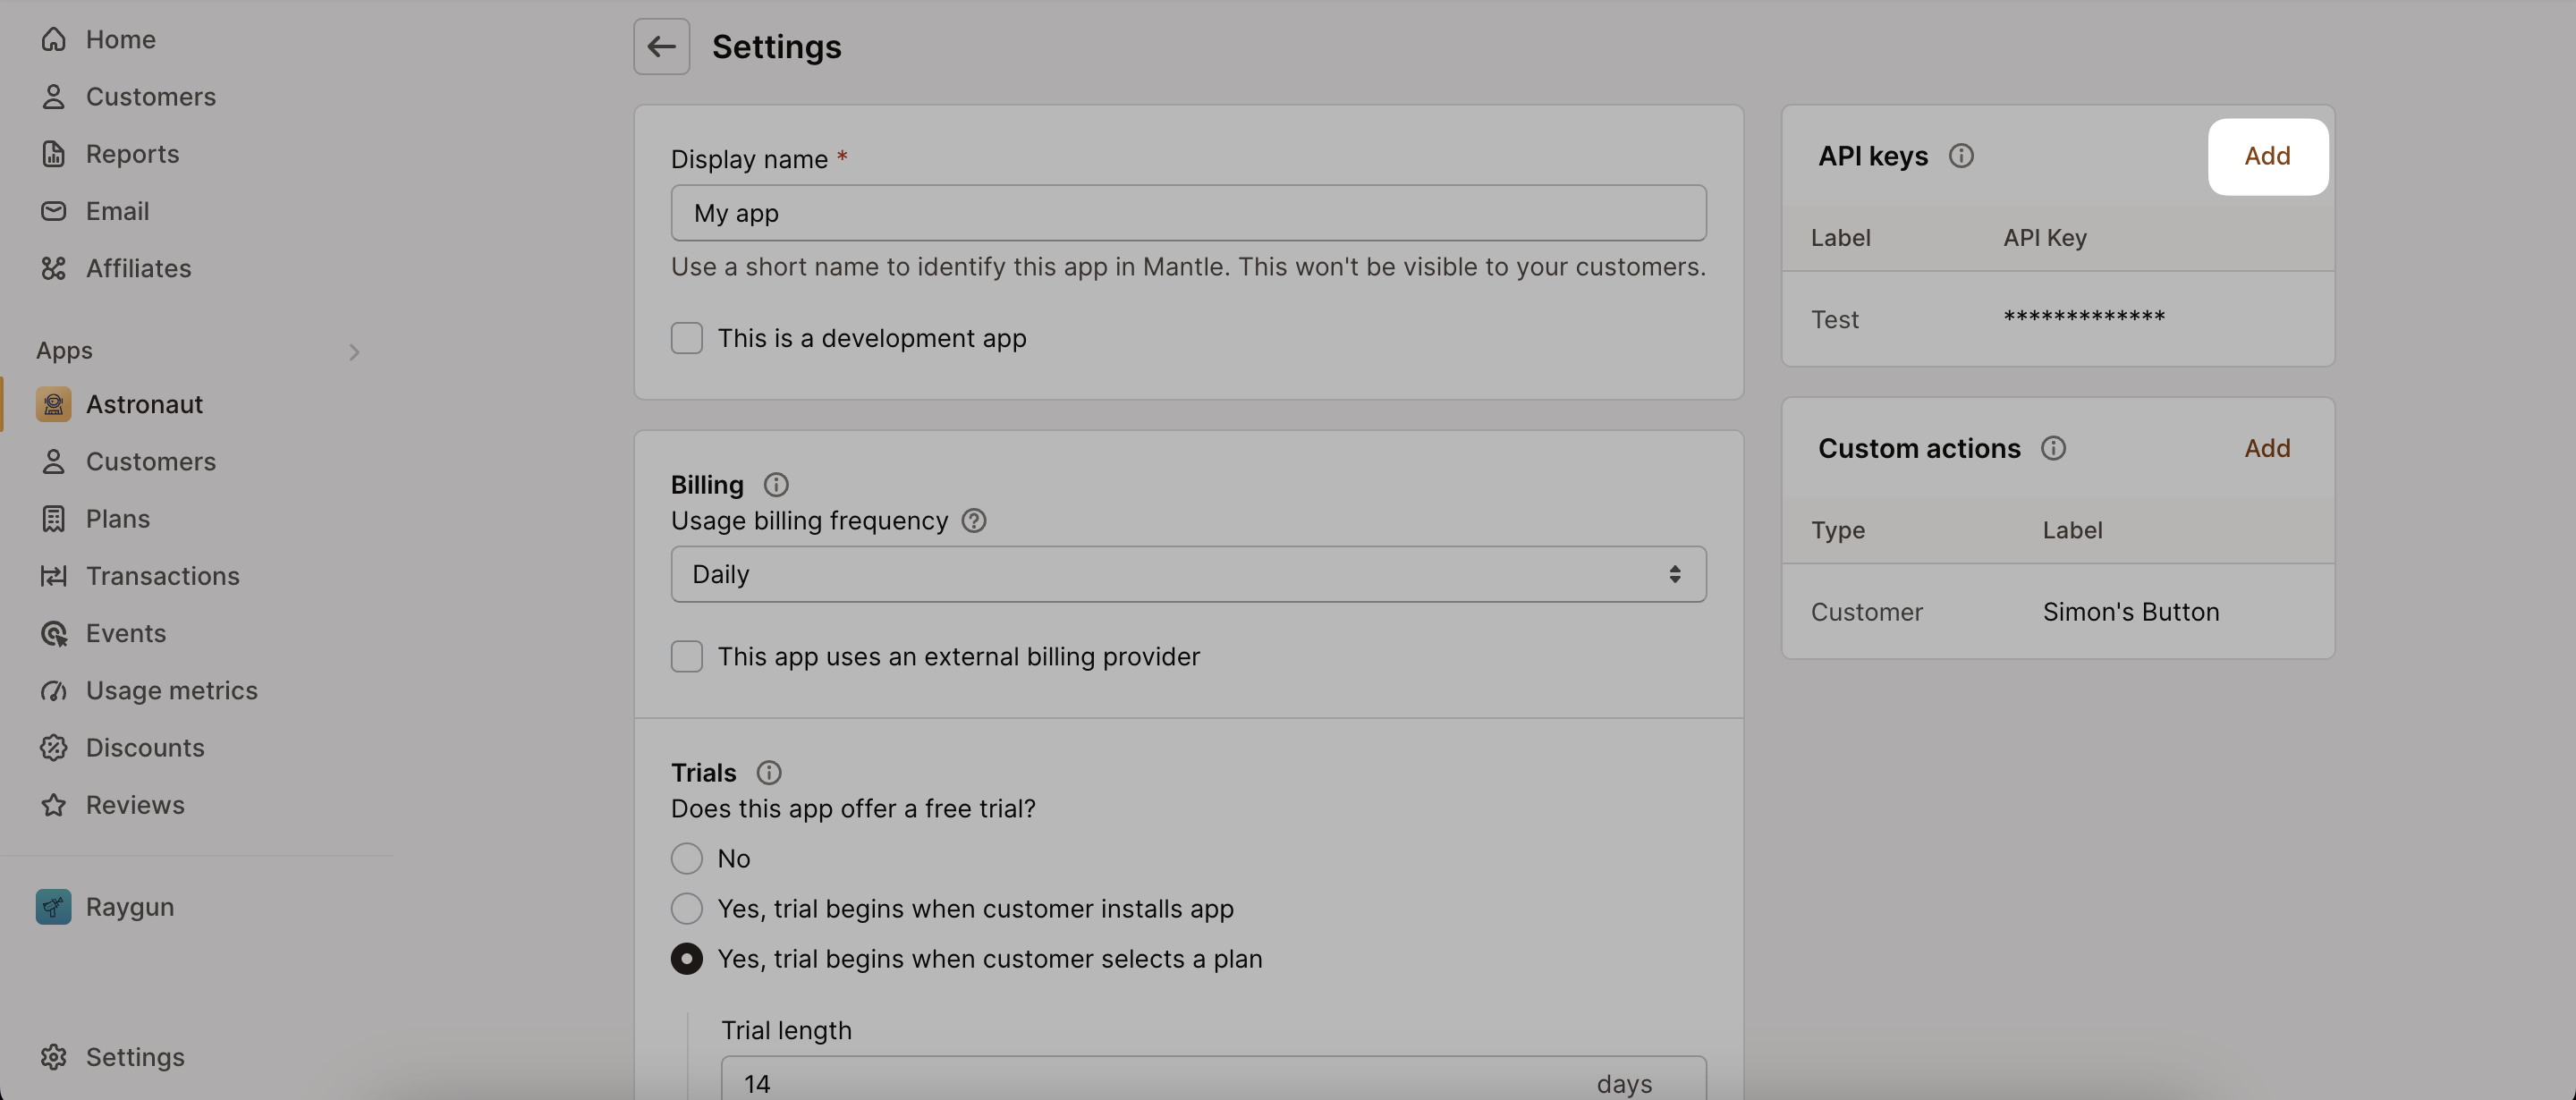 App settings - API key